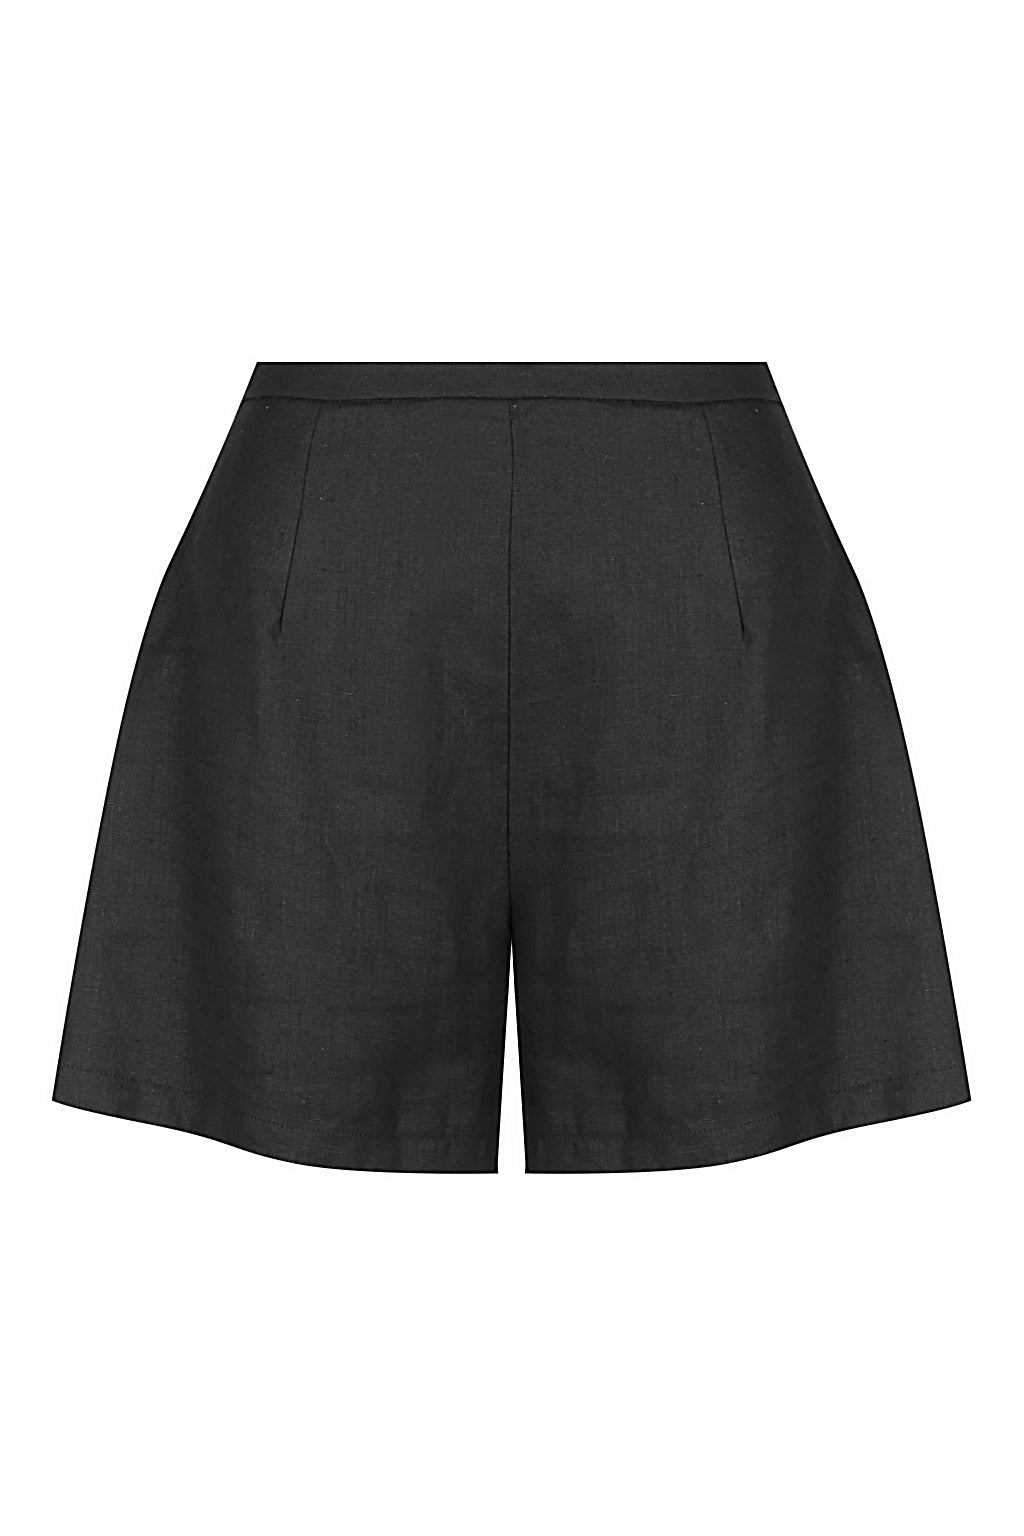 Bisk the Label Mimi Black Linen Shorts